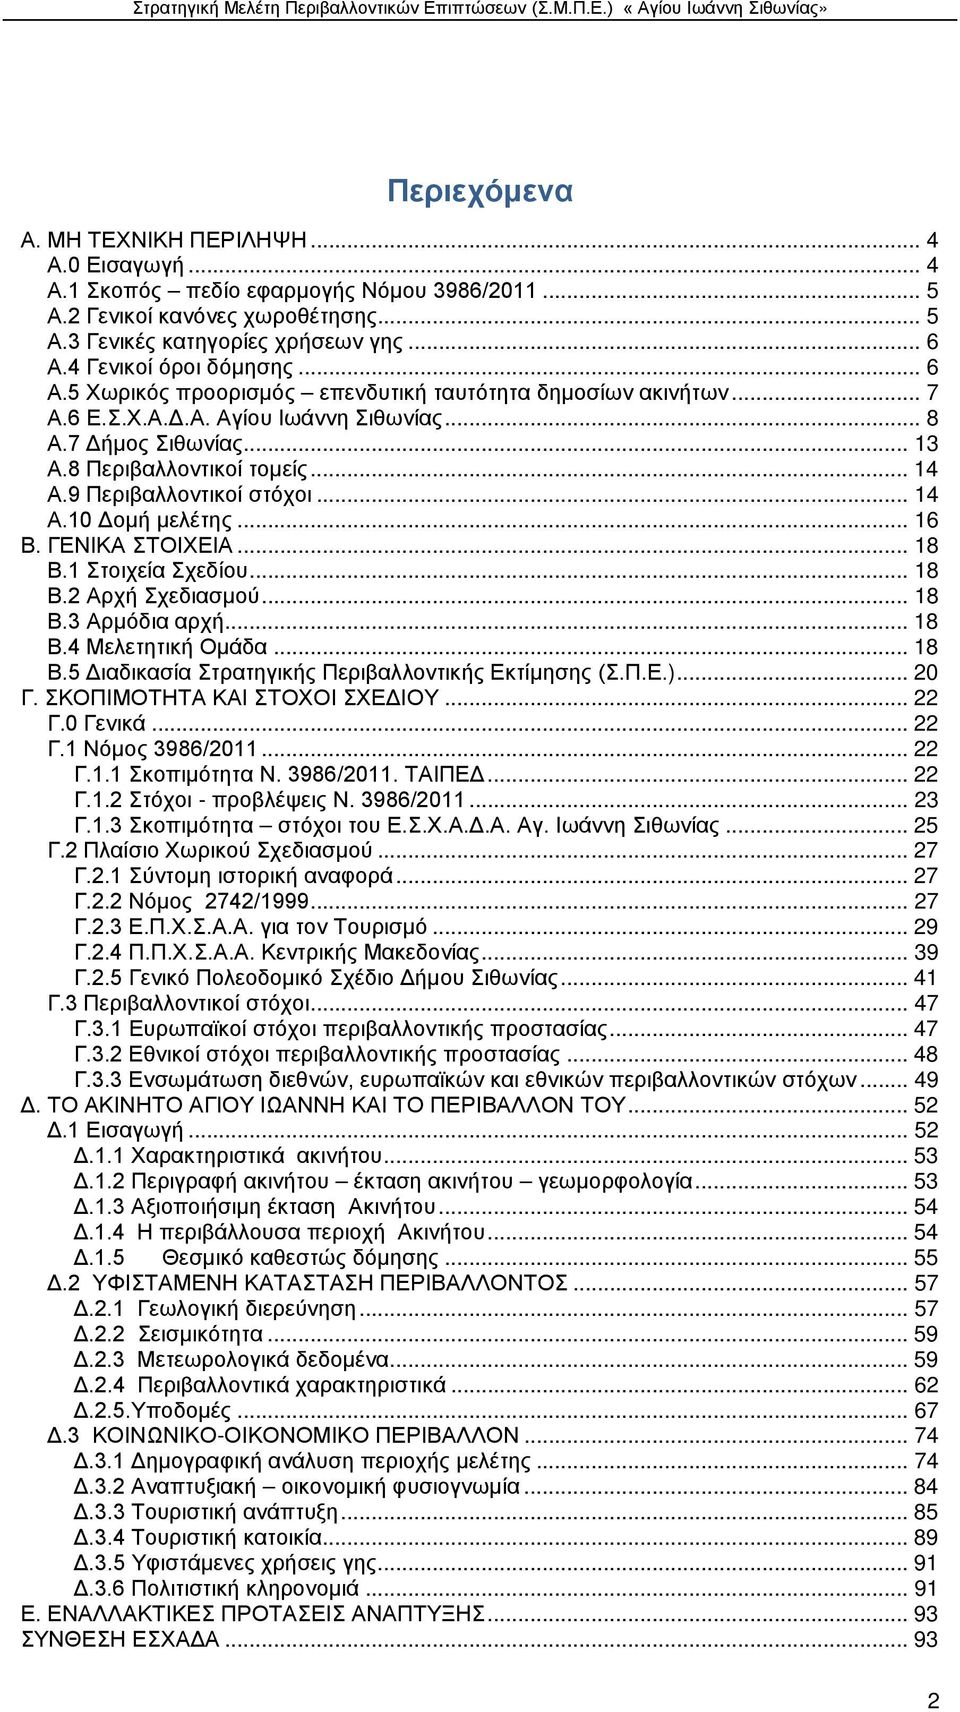 9 Περιβαλλοντικοί στόχοι... 14 Α.10 Δομή μελέτης... 16 Β. ΓΕΝΙΚΑ ΣΤΟΙΧΕΙΑ... 18 Β.1 Στοιχεία Σχεδίου... 18 Β.2 Αρχή Σχεδιασμού... 18 Β.3 Αρμόδια αρχή... 18 Β.4 Μελετητική Ομάδα... 18 Β.5 Διαδικασία Στρατηγικής Περιβαλλοντικής Εκτίμησης (Σ.